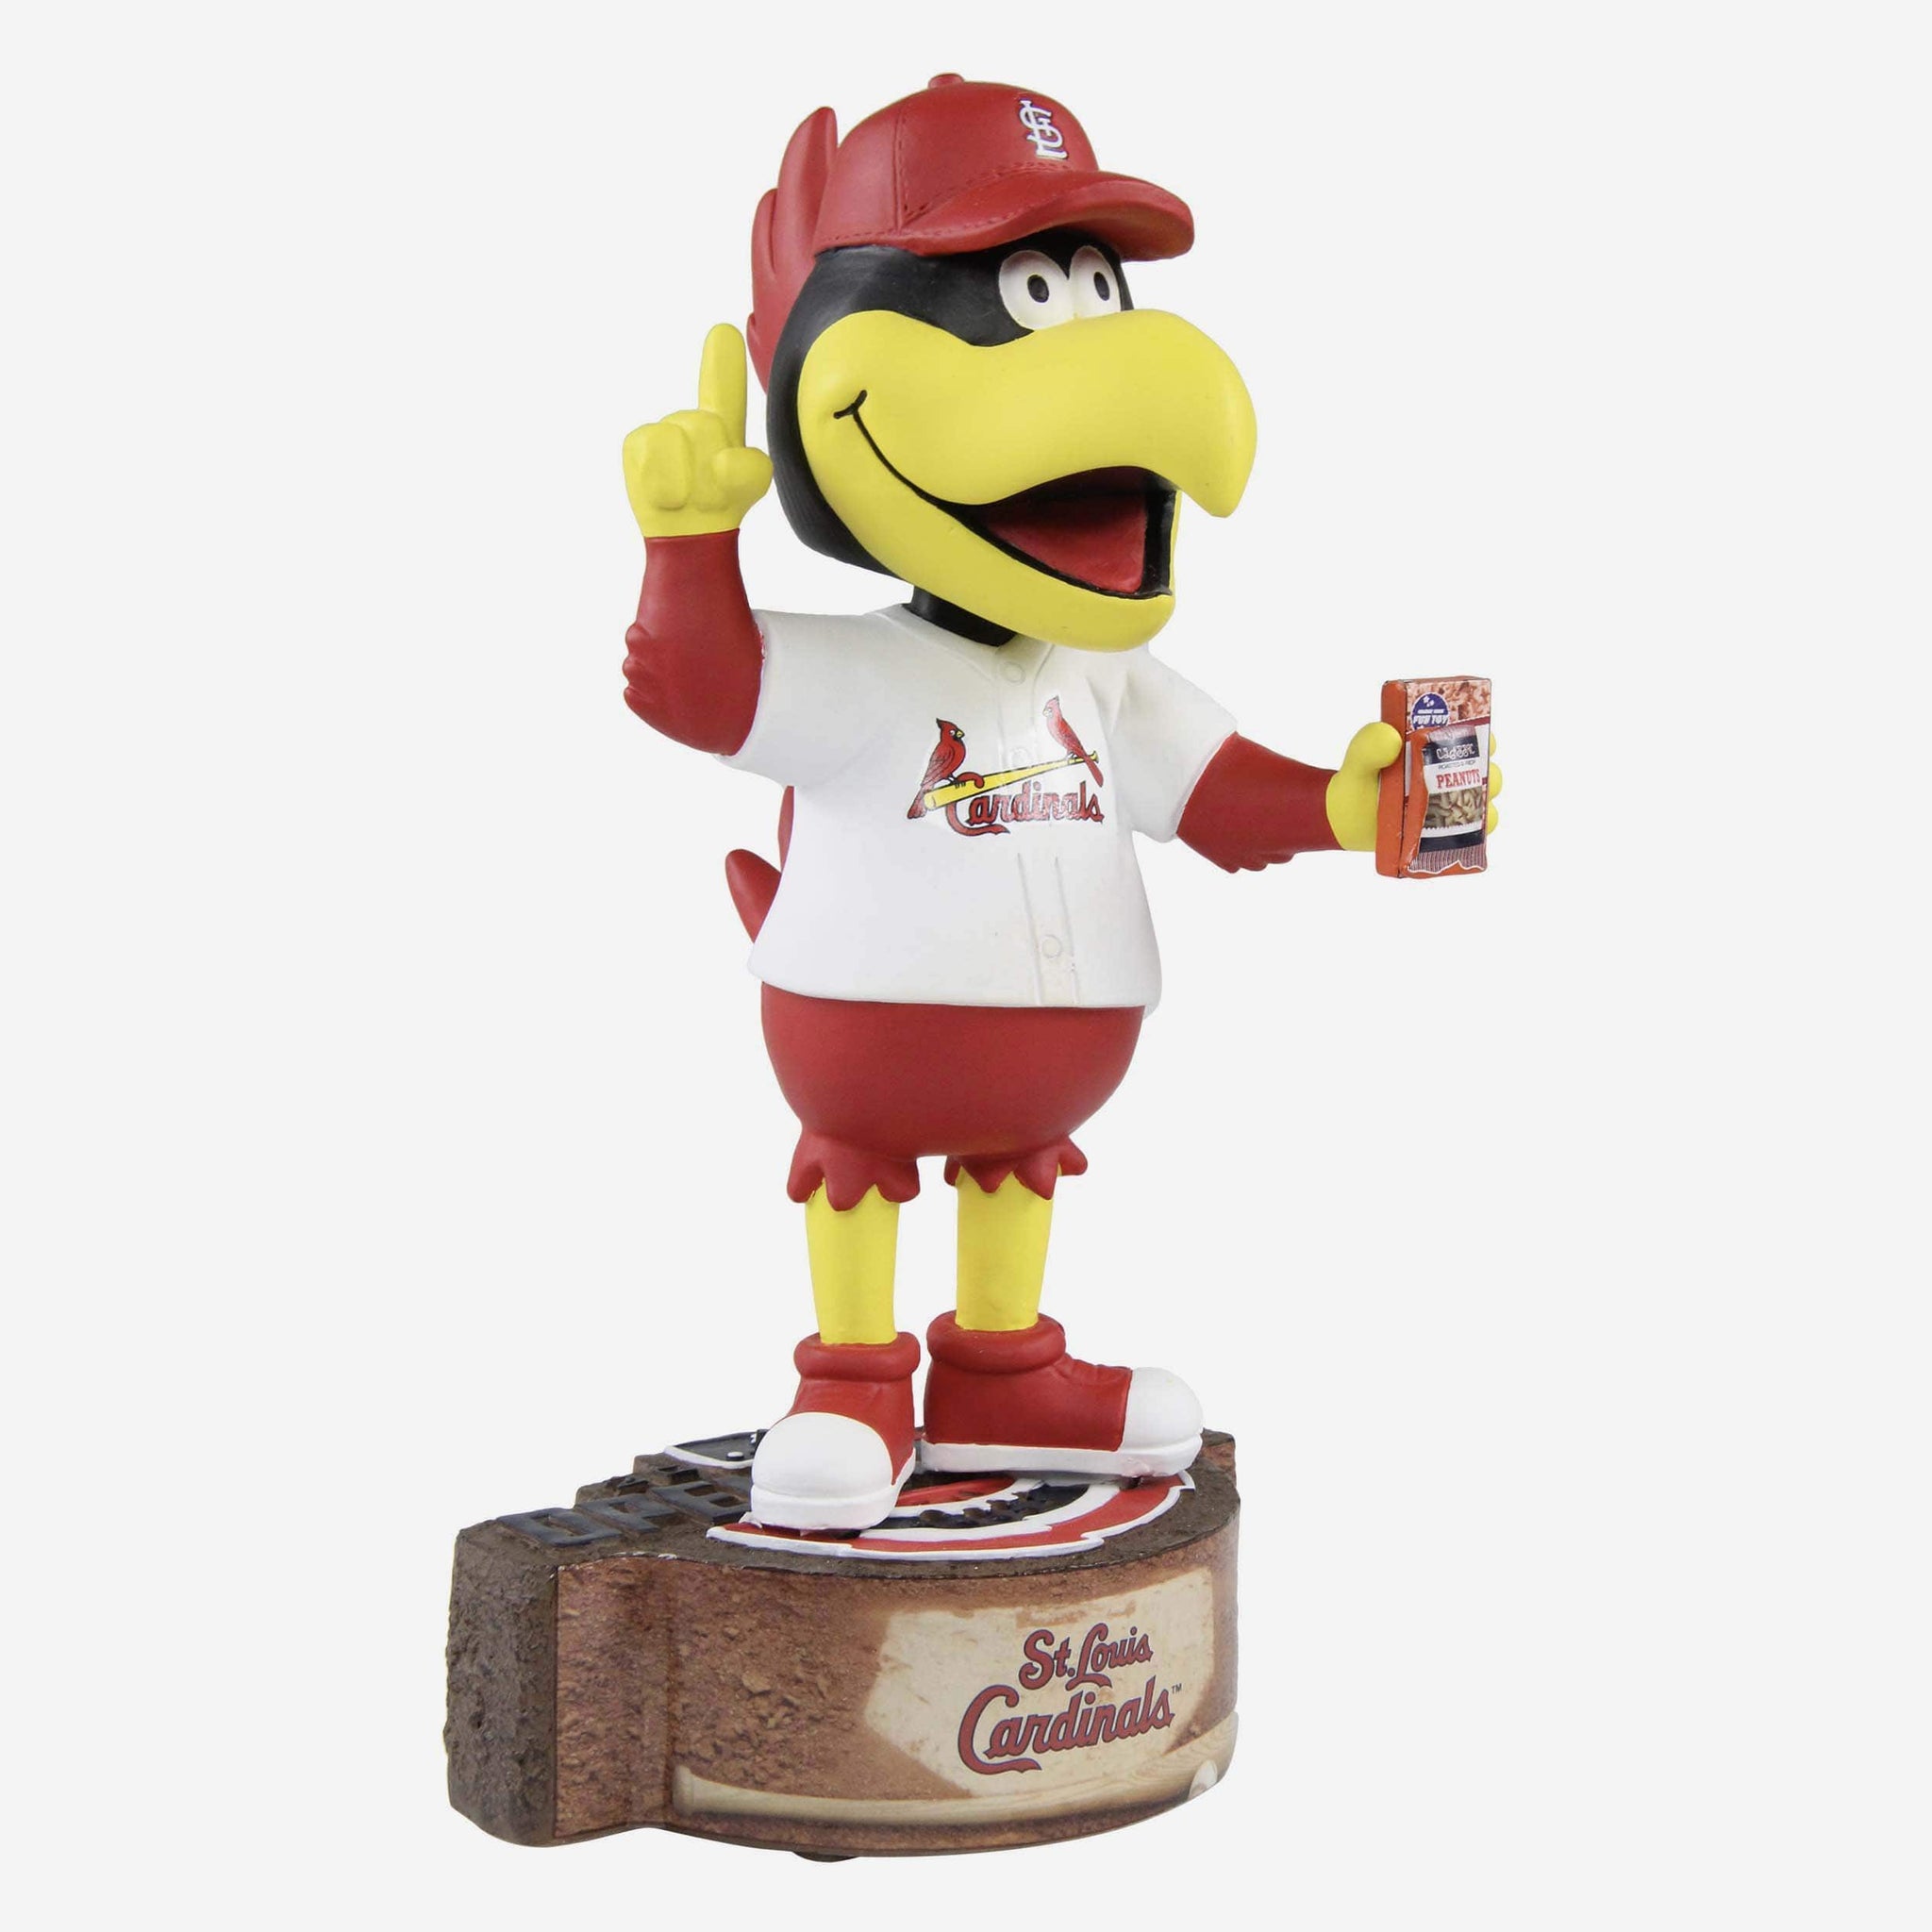 Fredbird St Louis Cardinals Mascot Bighead Bobblehead FOCO